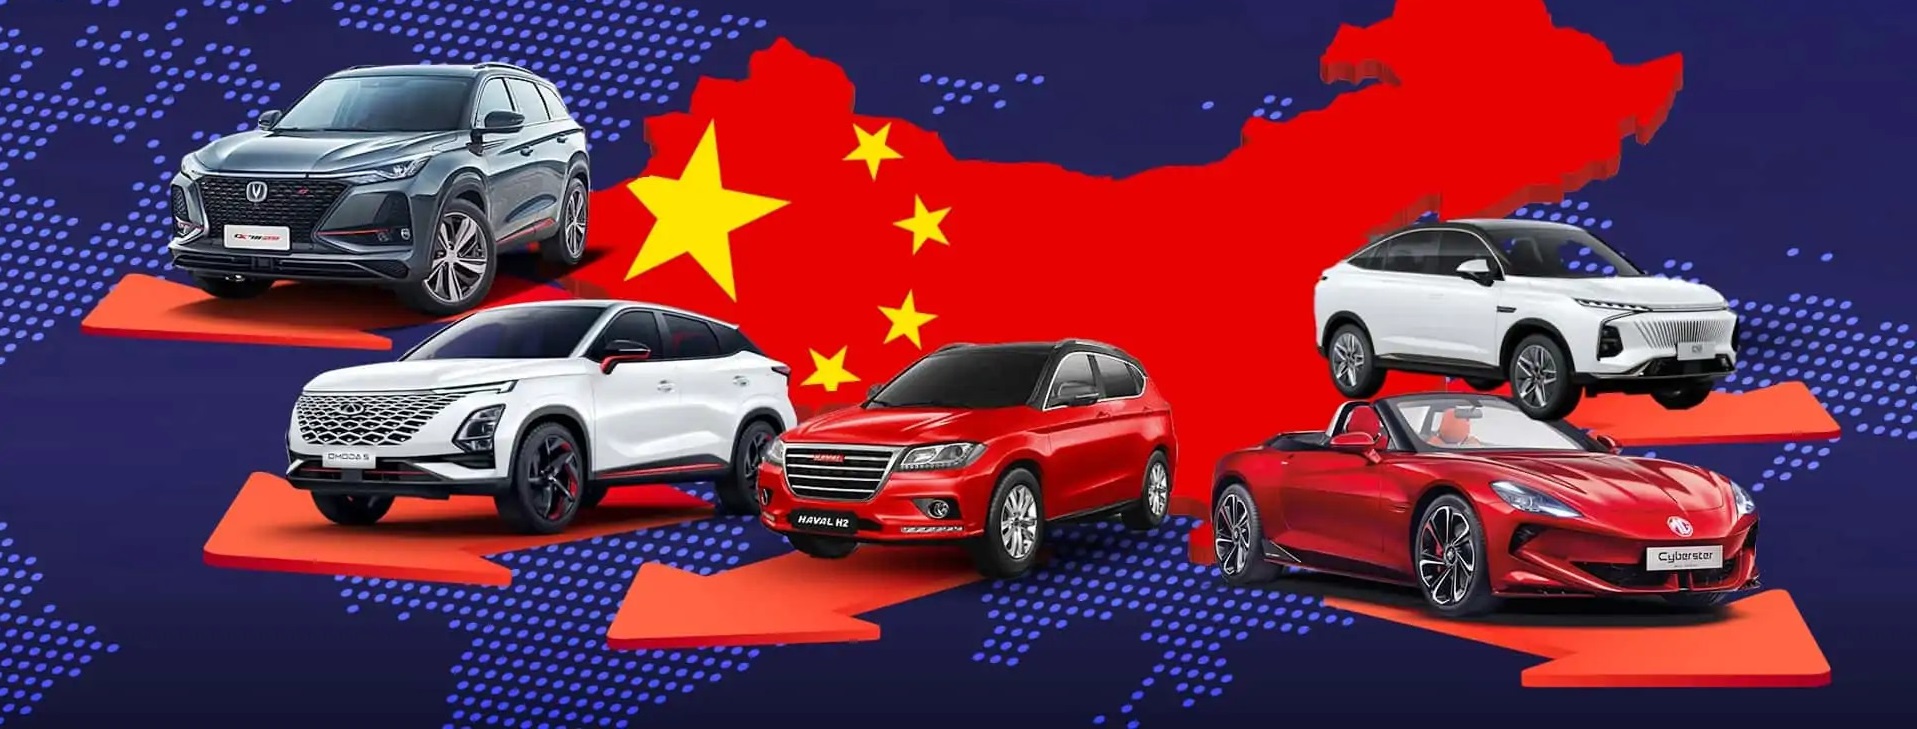 Nhiều hãng xe lớn ‘bó tay’ tại Trung Quốc sau một thời gian làm mưa làm gió: VW, Hyundai, Ford, Nissan phải cắt giảm sản lượng- Ảnh 2.